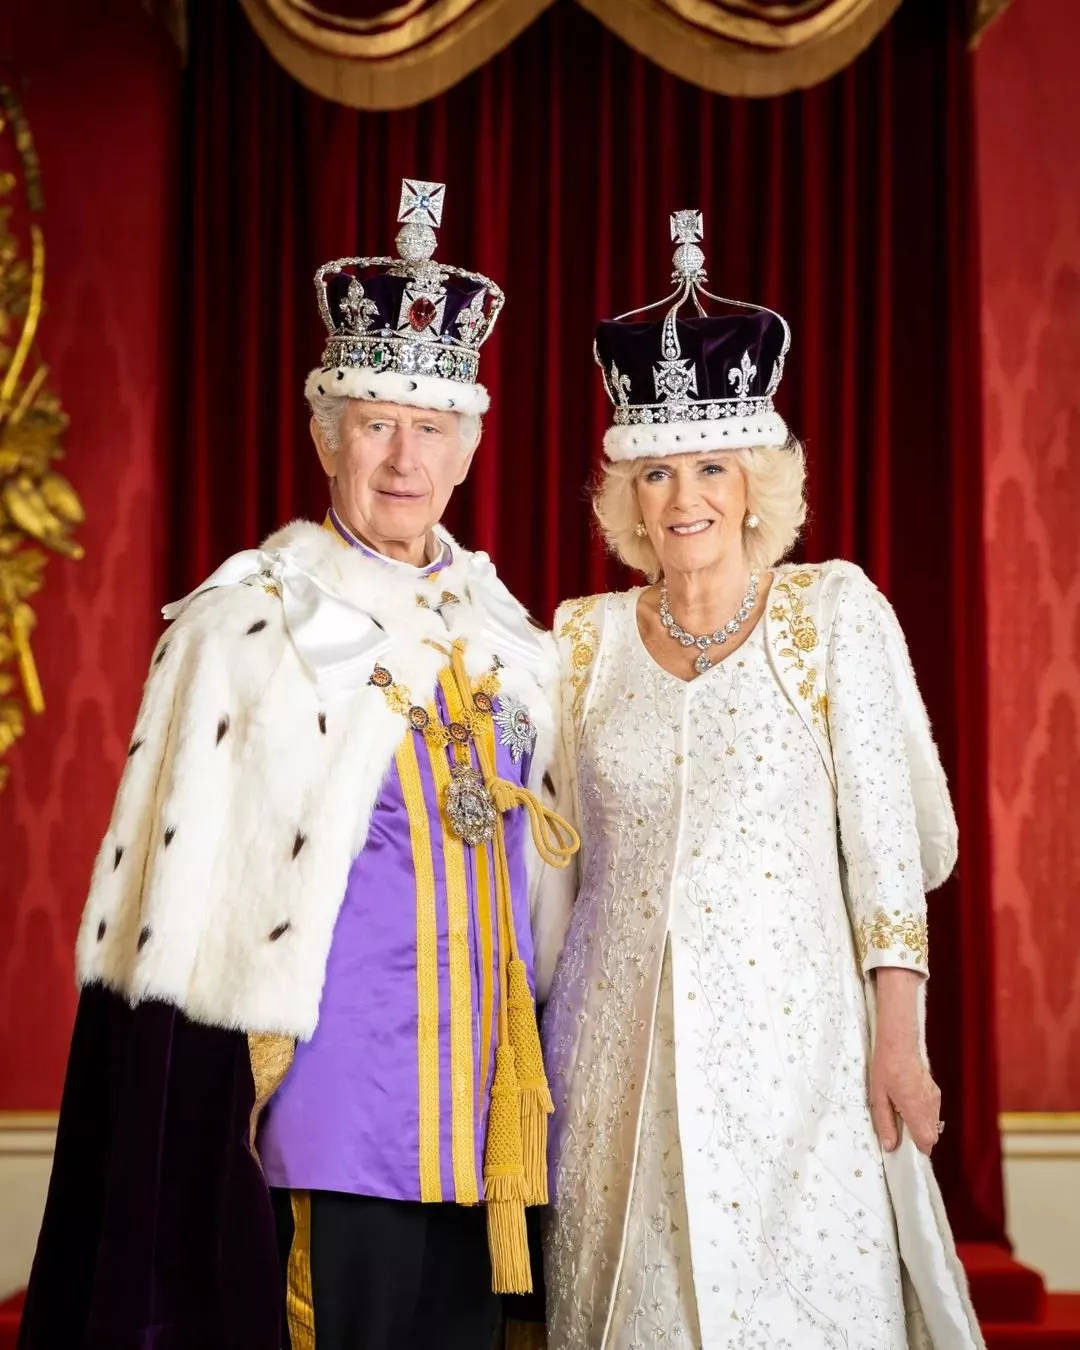 الصور الرسمية الأولى للملك تشارلز والملكة كاميلا بعد حفل التتويج